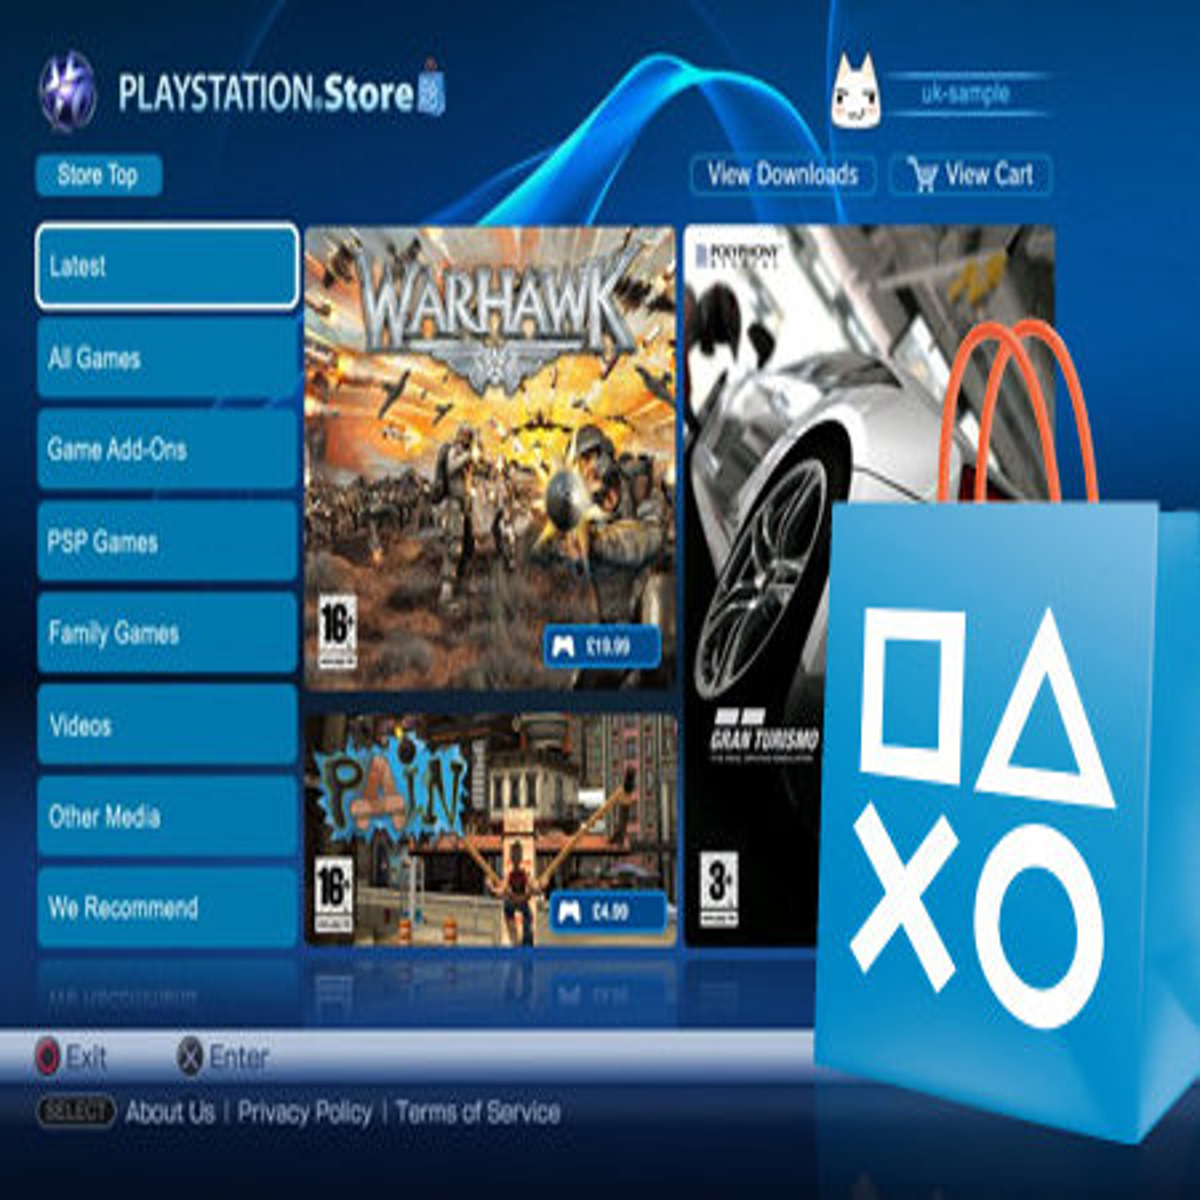 PlayStation Stars chega hoje à Europa com várias ofertas da Sony - 4gnews